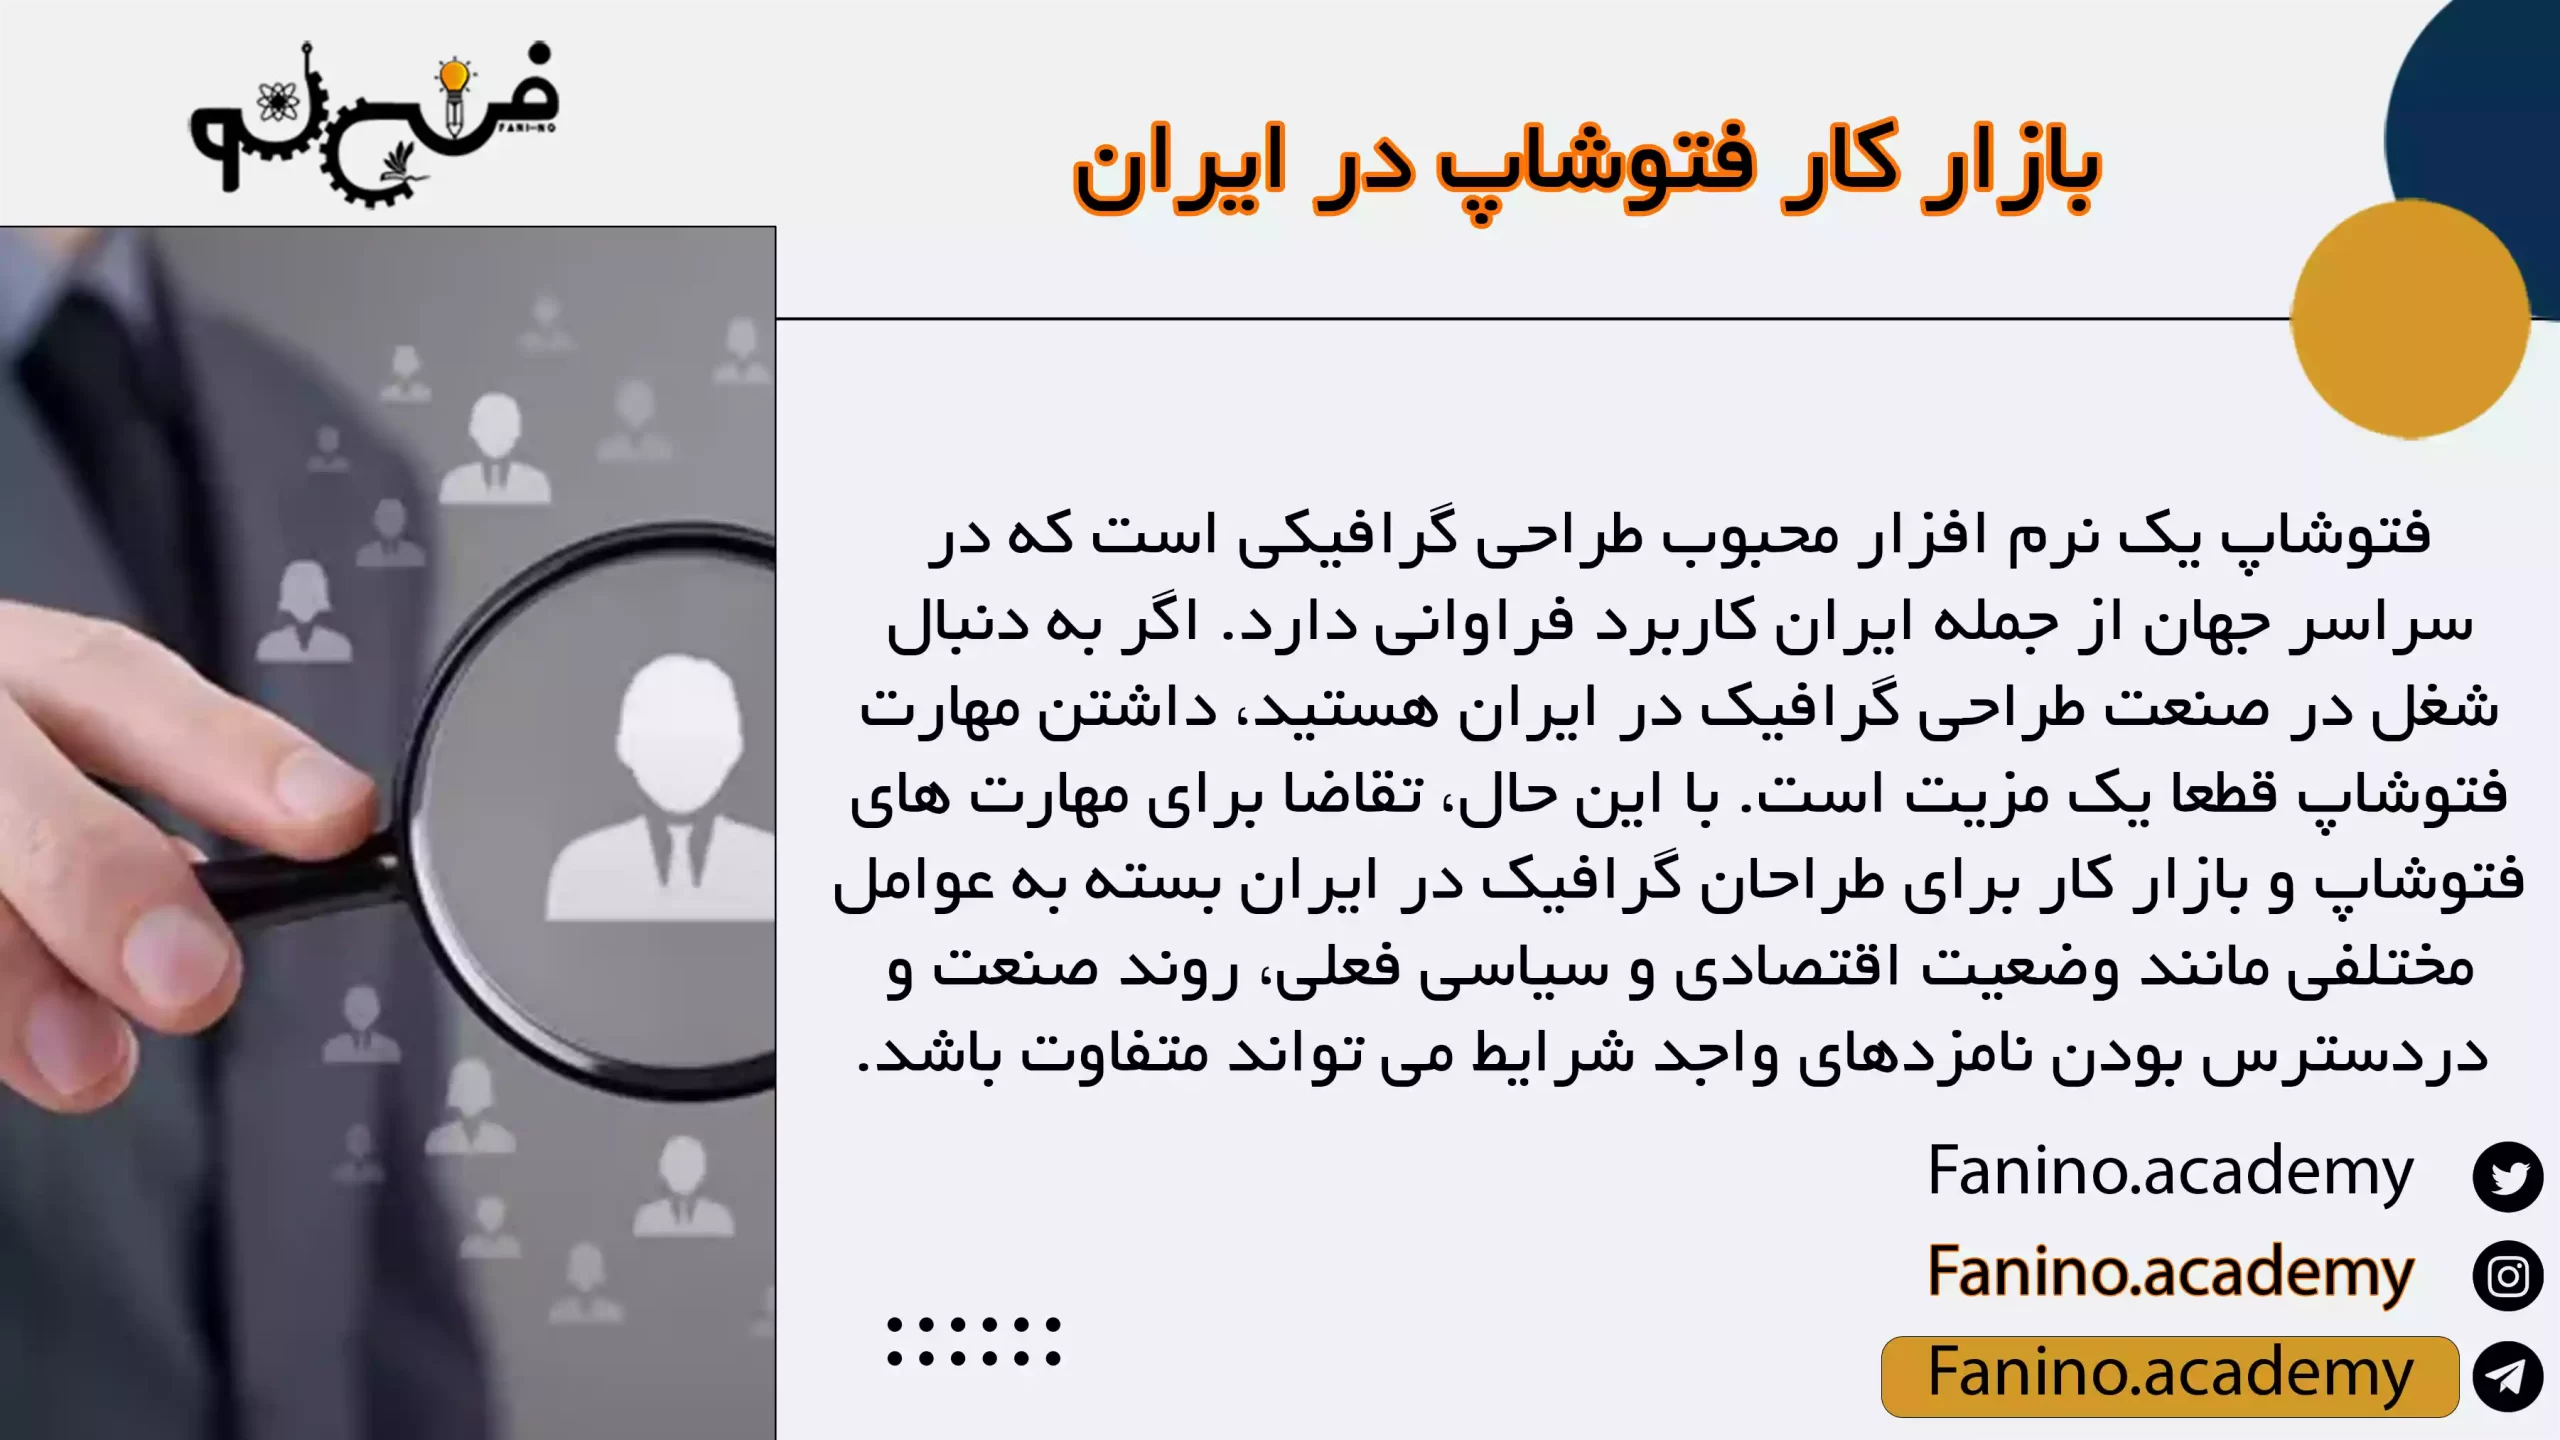 بازار کار فتوشاپ در ایران